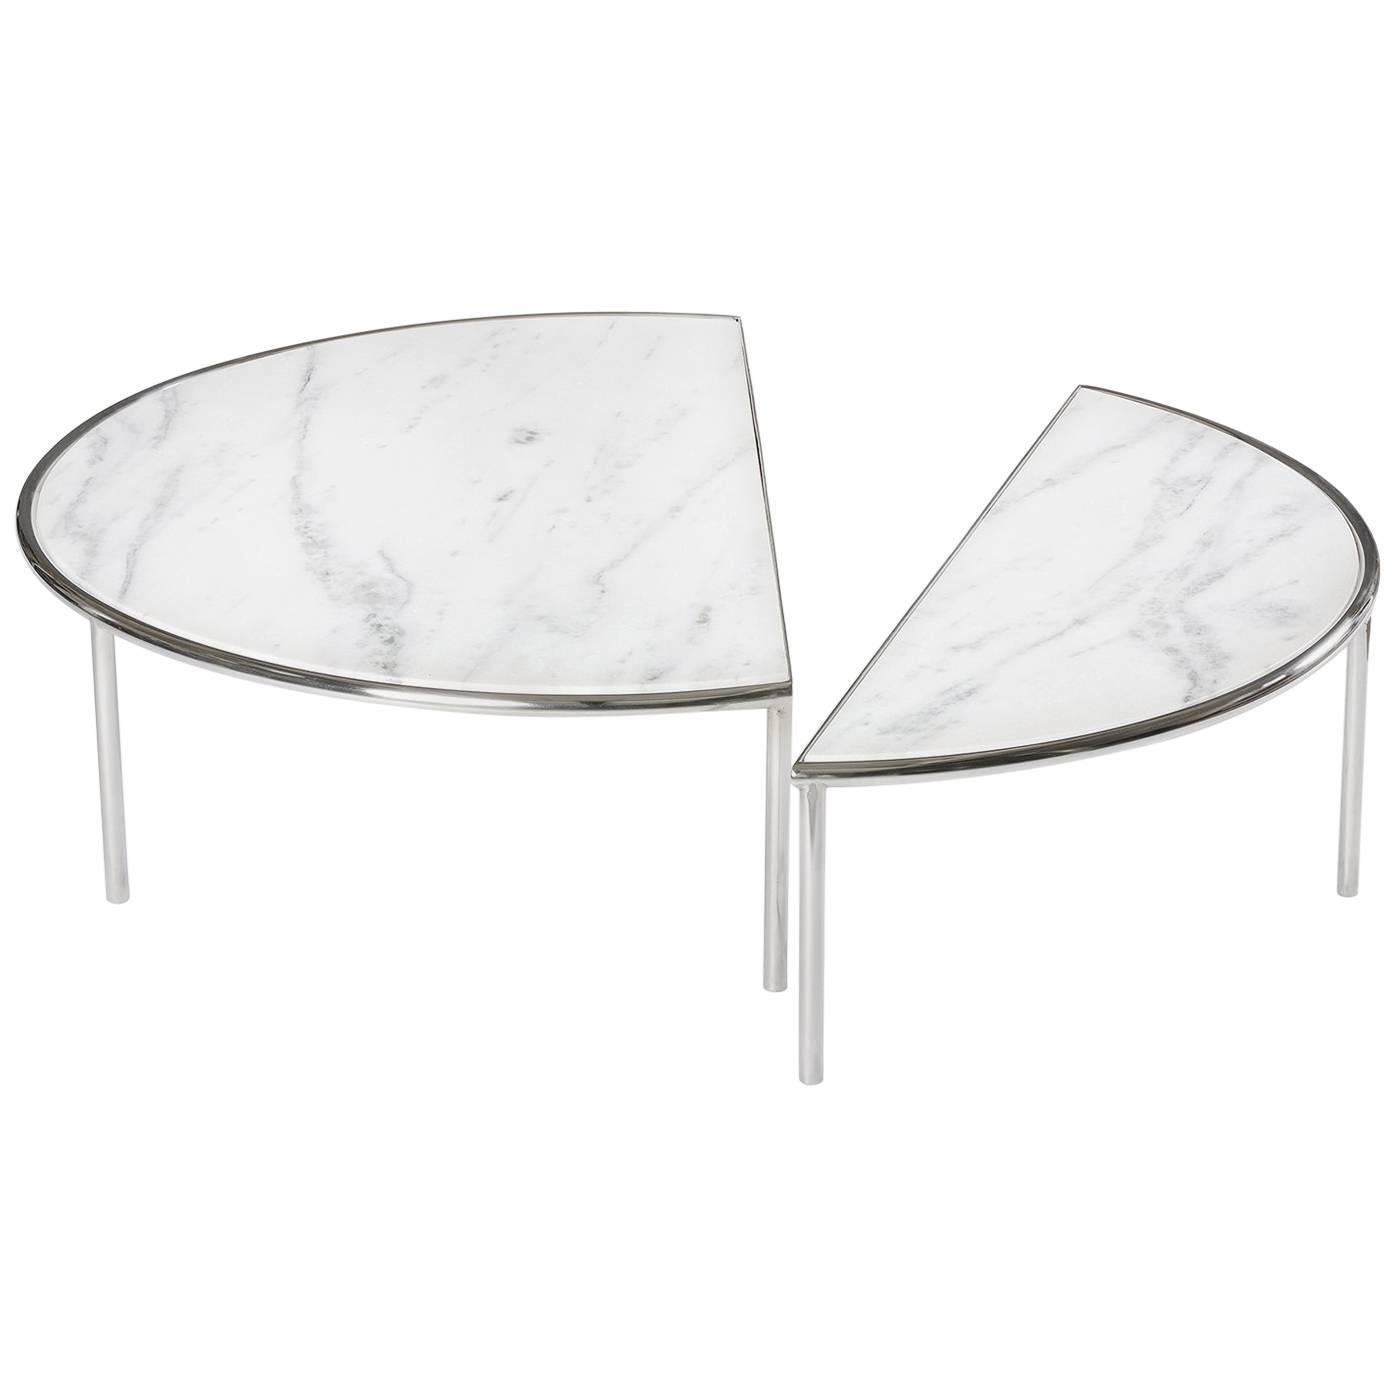 Table centrale fendue contemporaine RAIN en acier inoxydable et marbre blanc